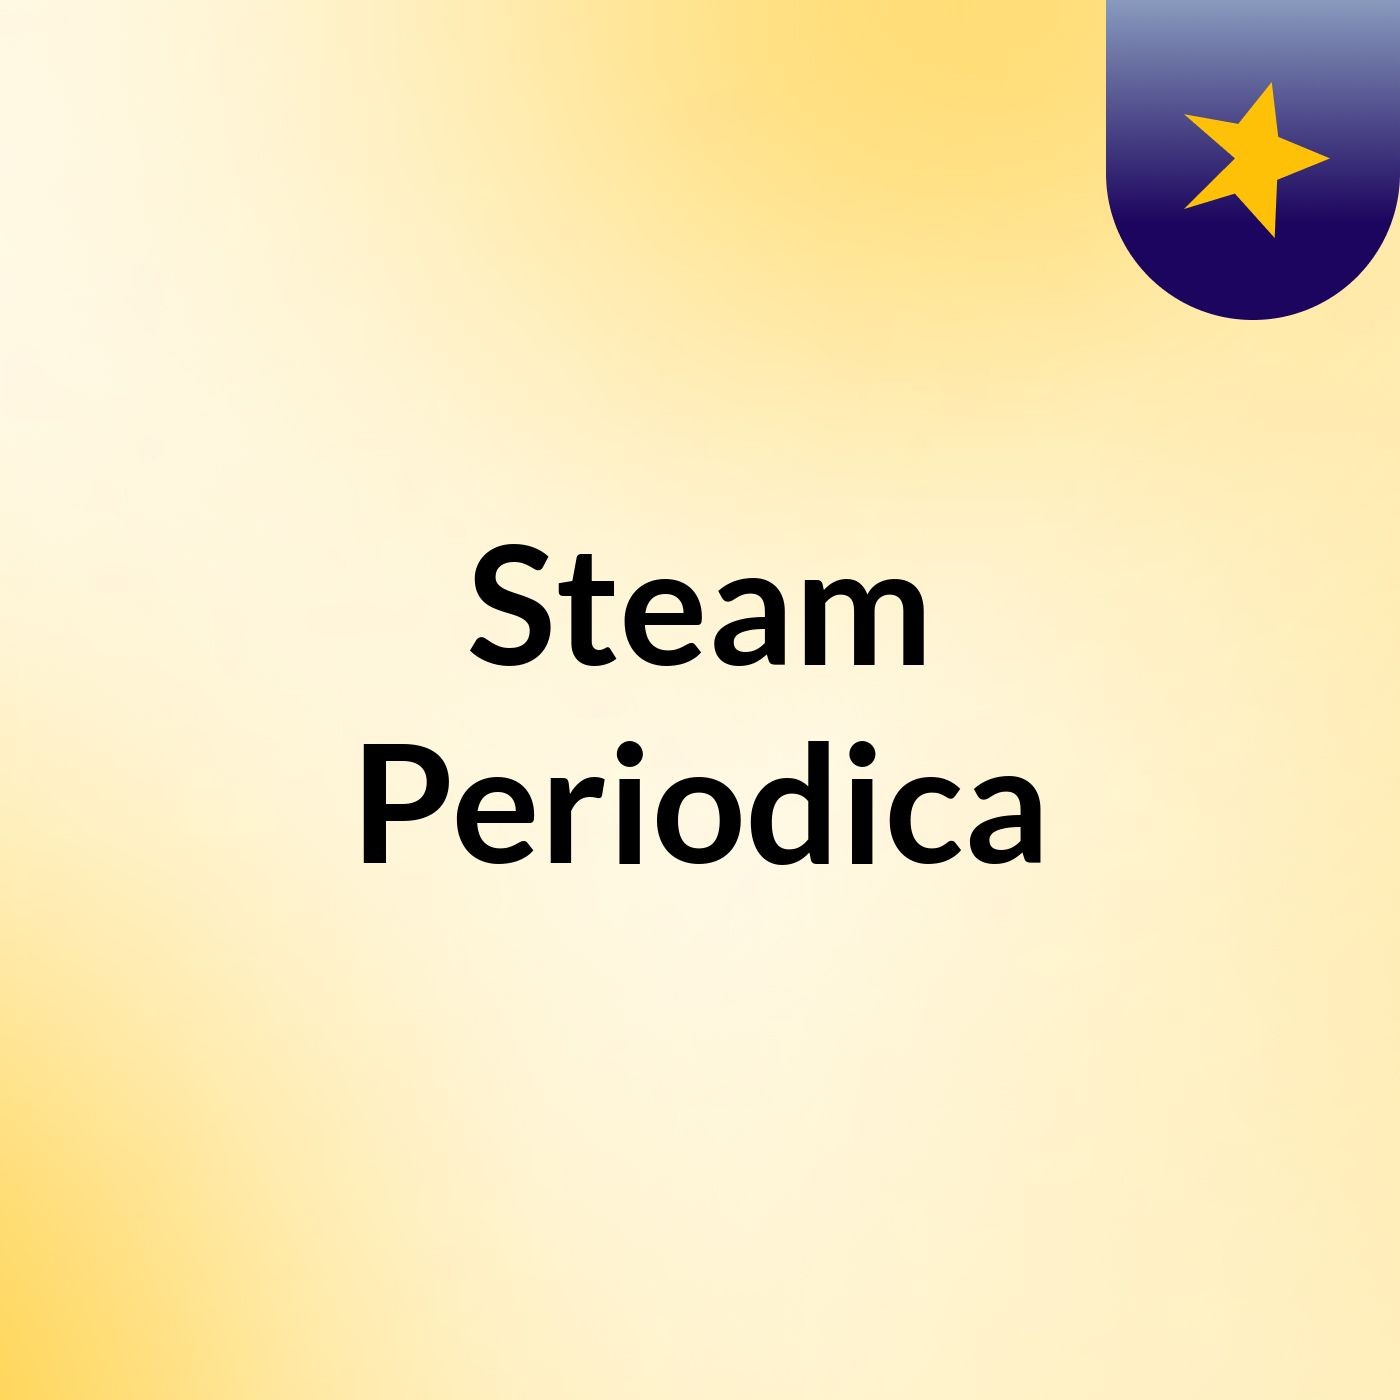 Steam Periodica